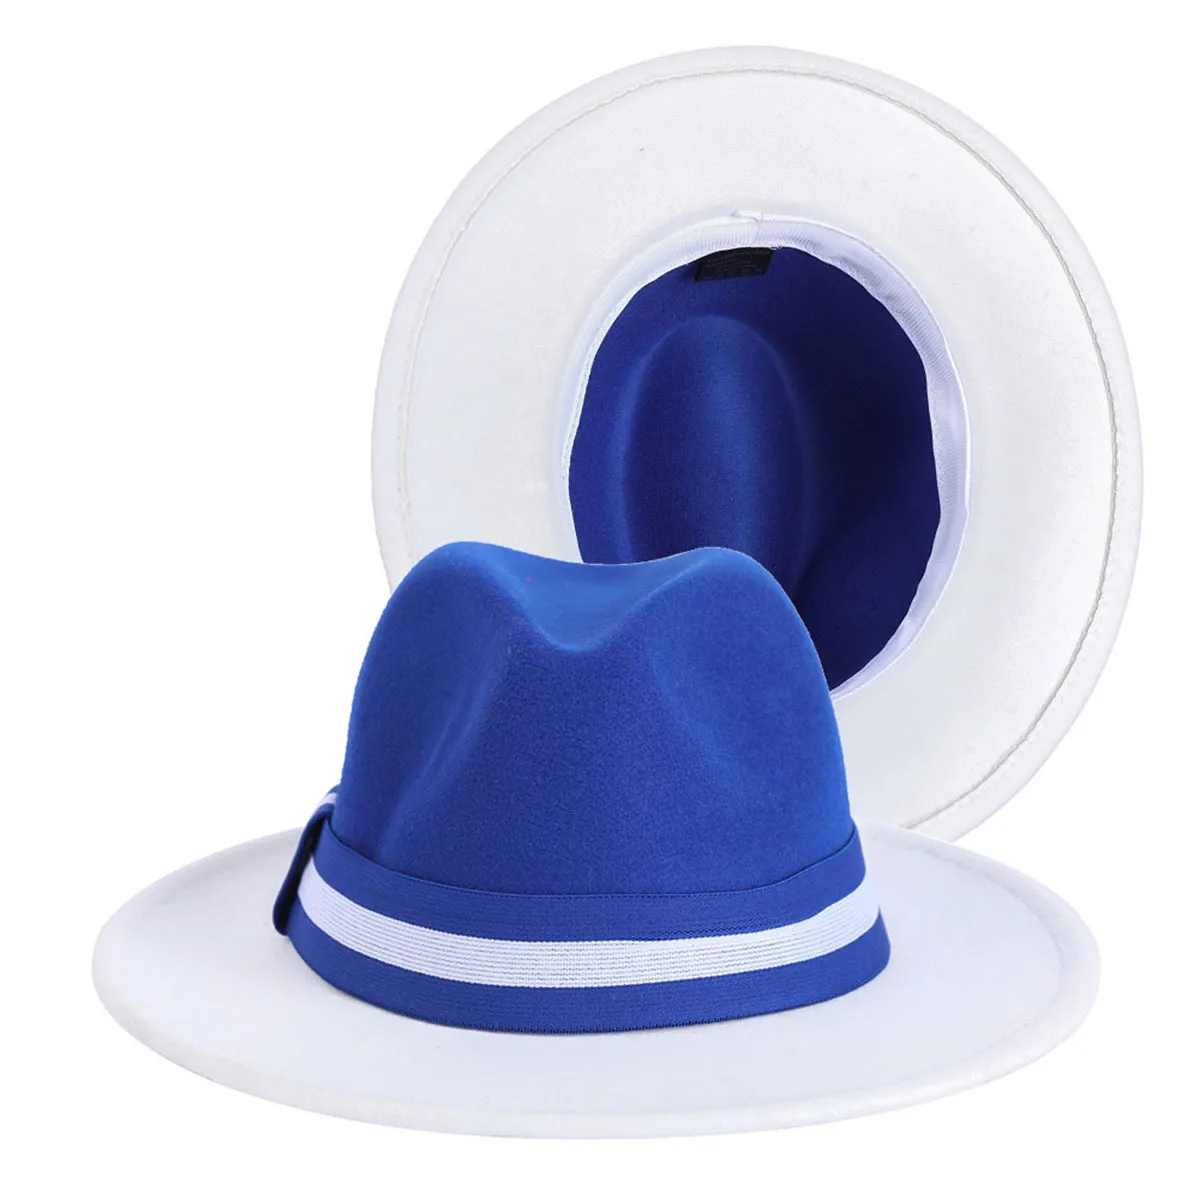 レイカーズカラーマッチングジャズFedora Hats乗馬パーティー紳士帽子ワイドブラムエレガントな2色教会パフォーマンスキャップ